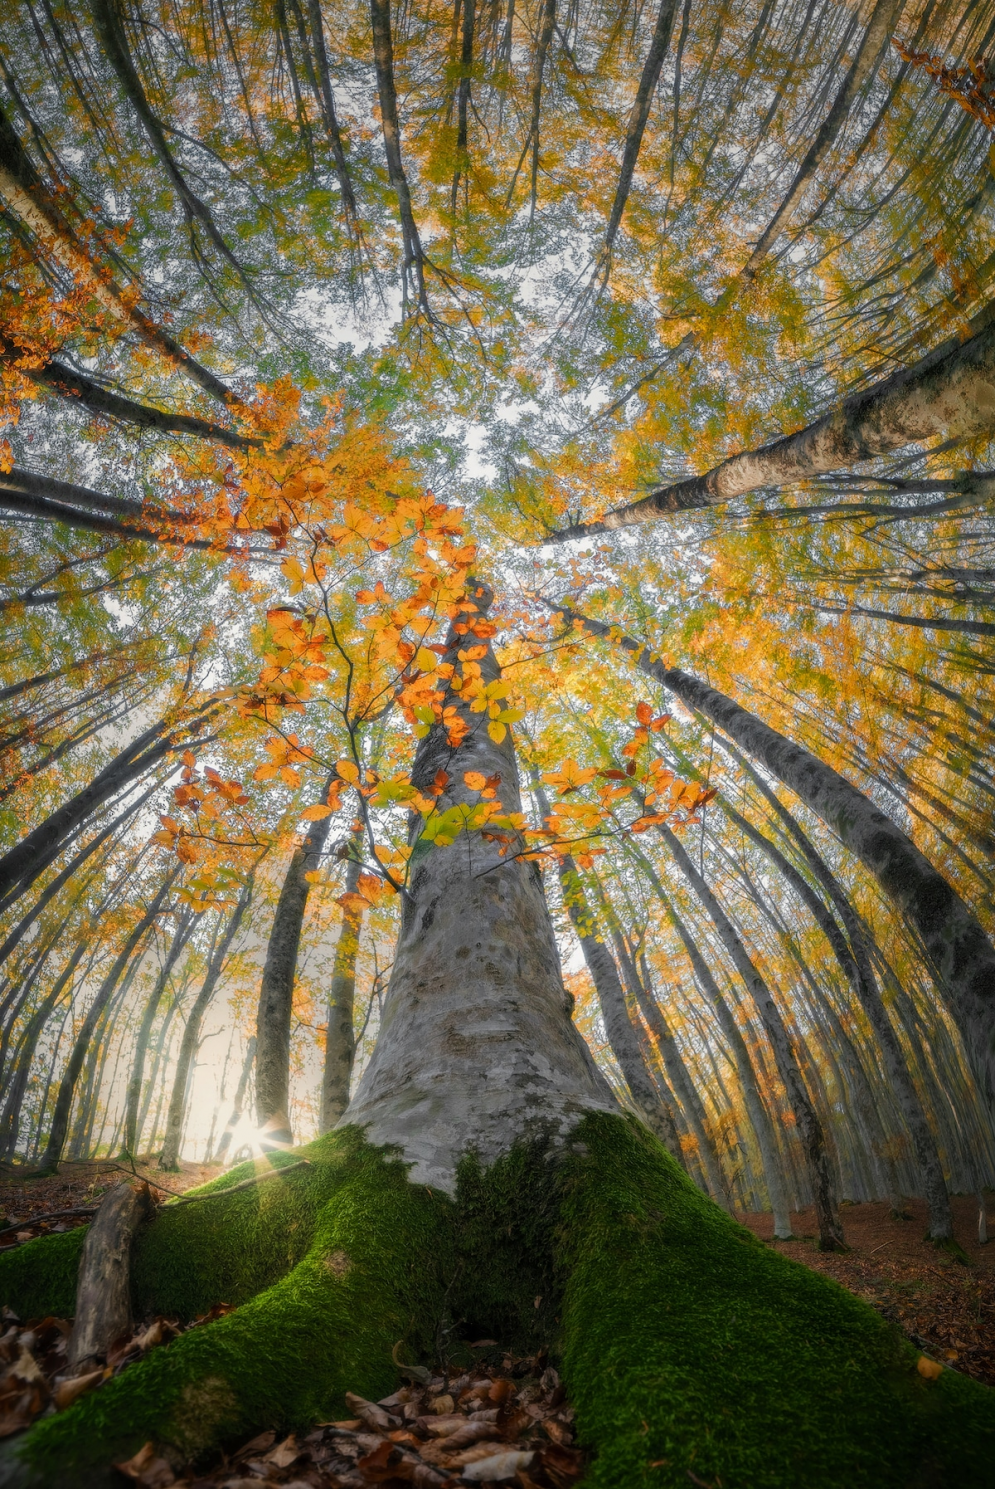 Splendoarea arborilor centenari, in urcusul lor spre cer - Poza 6